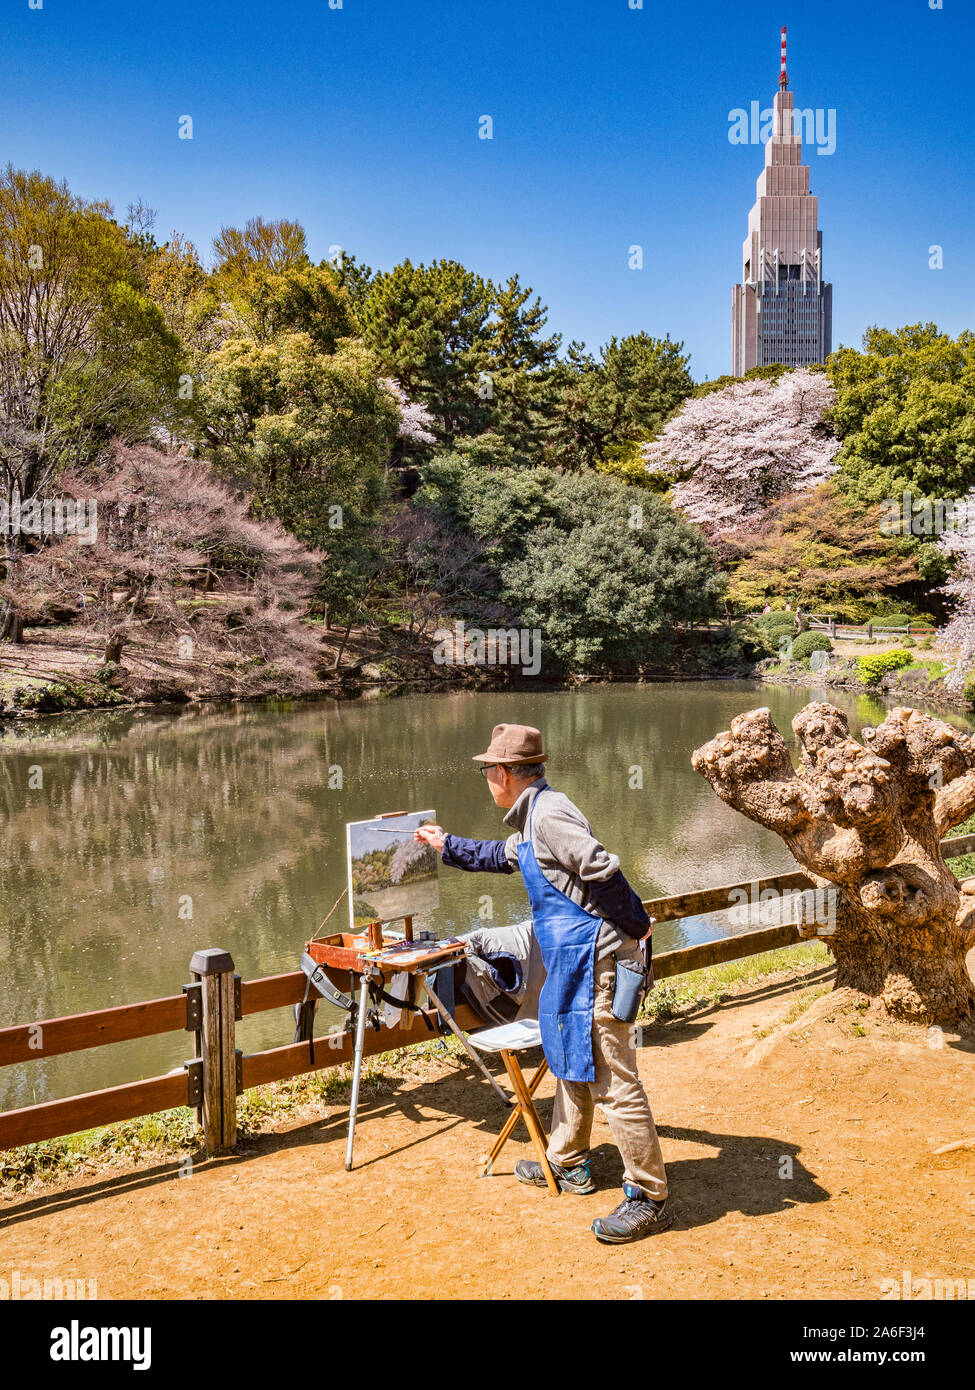 4 avril 2019 : Tokyo, Japon - peinture artiste cherry blossom et le lac dans le jardin National de Shinjuku Gyoen, Tokyo. Banque D'Images